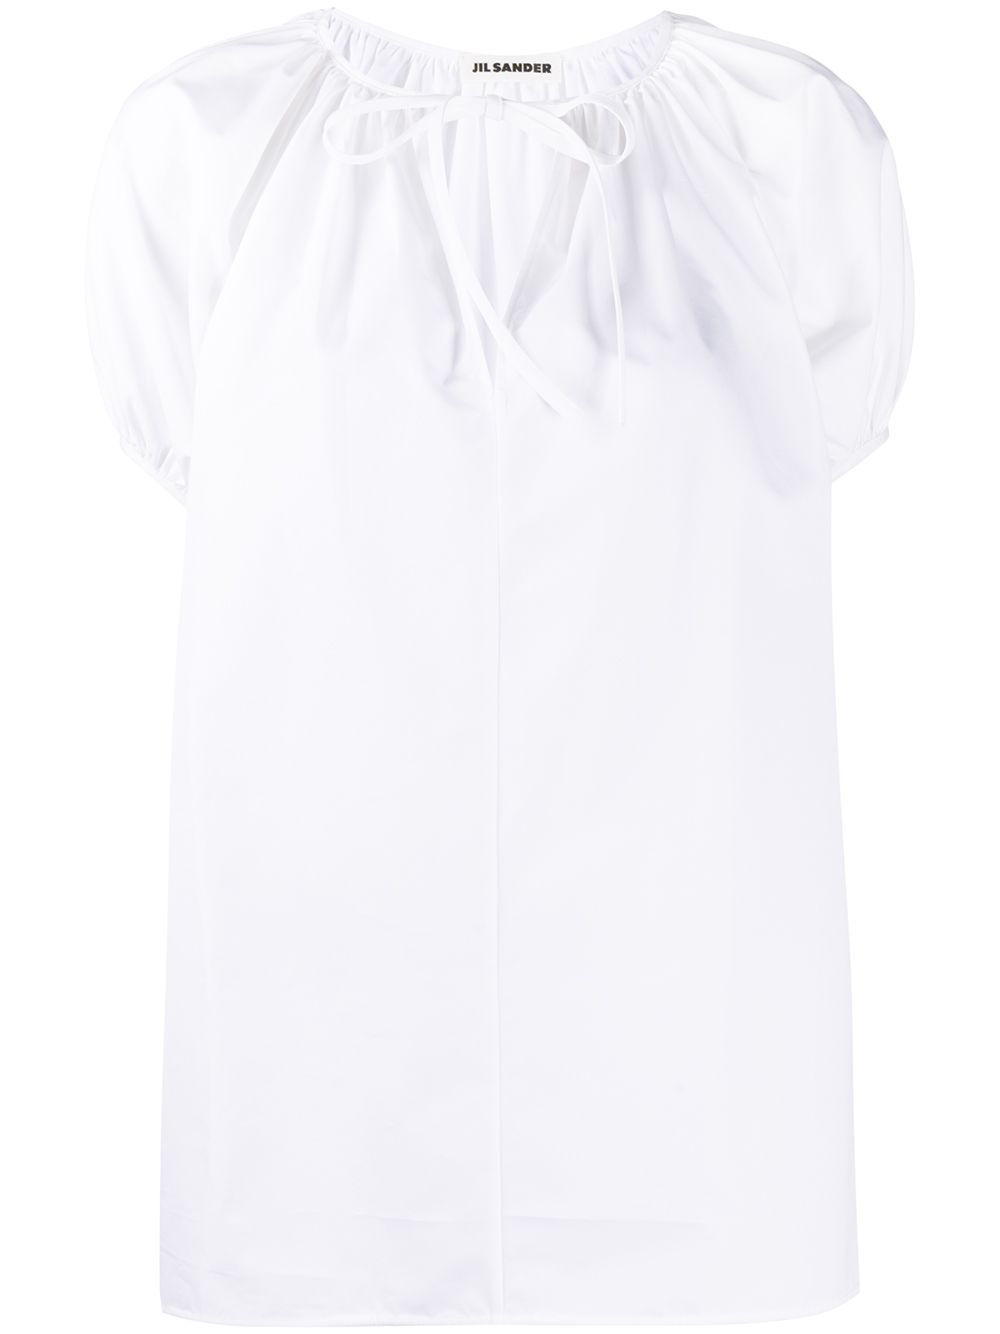 фото Jil sander блузка с вырезами и рукавами кап